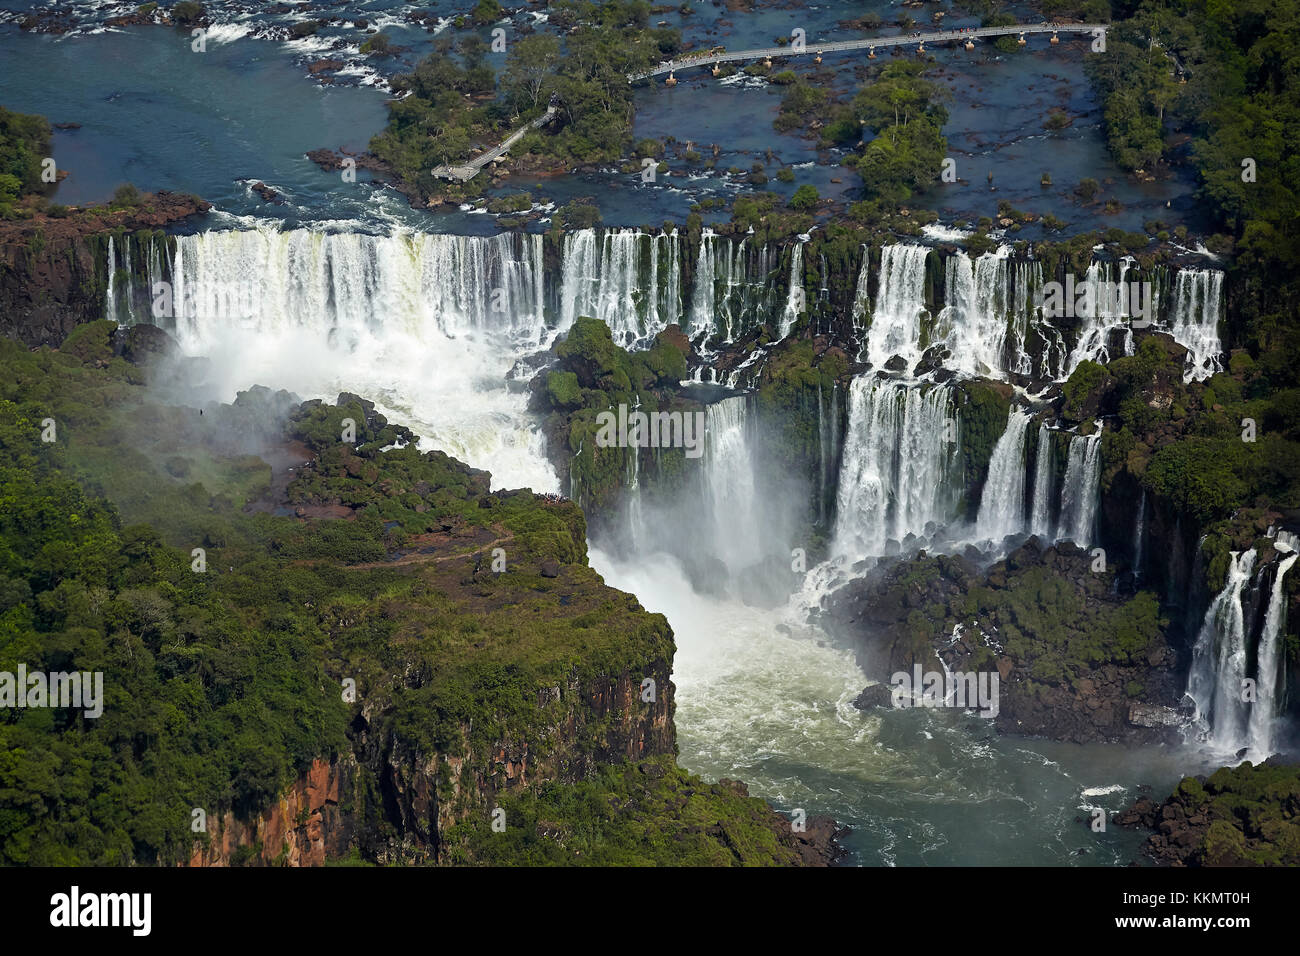 Côté argentin des chutes d'Iguazu, sur le Brésil - frontière Argentine, Amérique du Sud - aérien Banque D'Images